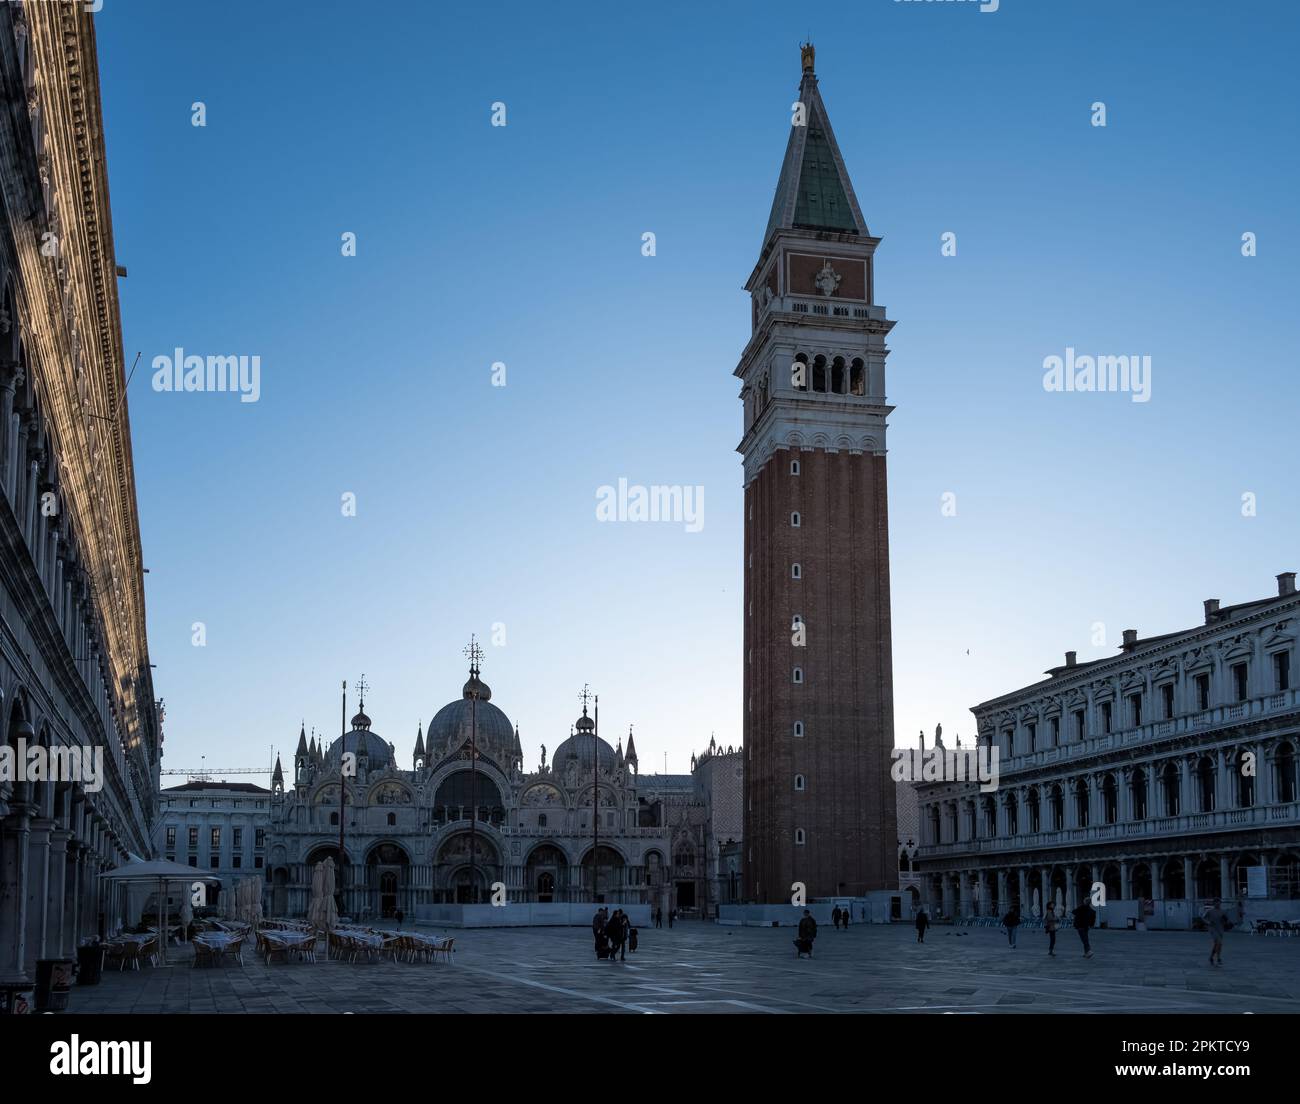 Détail architectural de la Piazza San Marco (place Saint-Marc) la principale place publique de Venise, Italie Banque D'Images